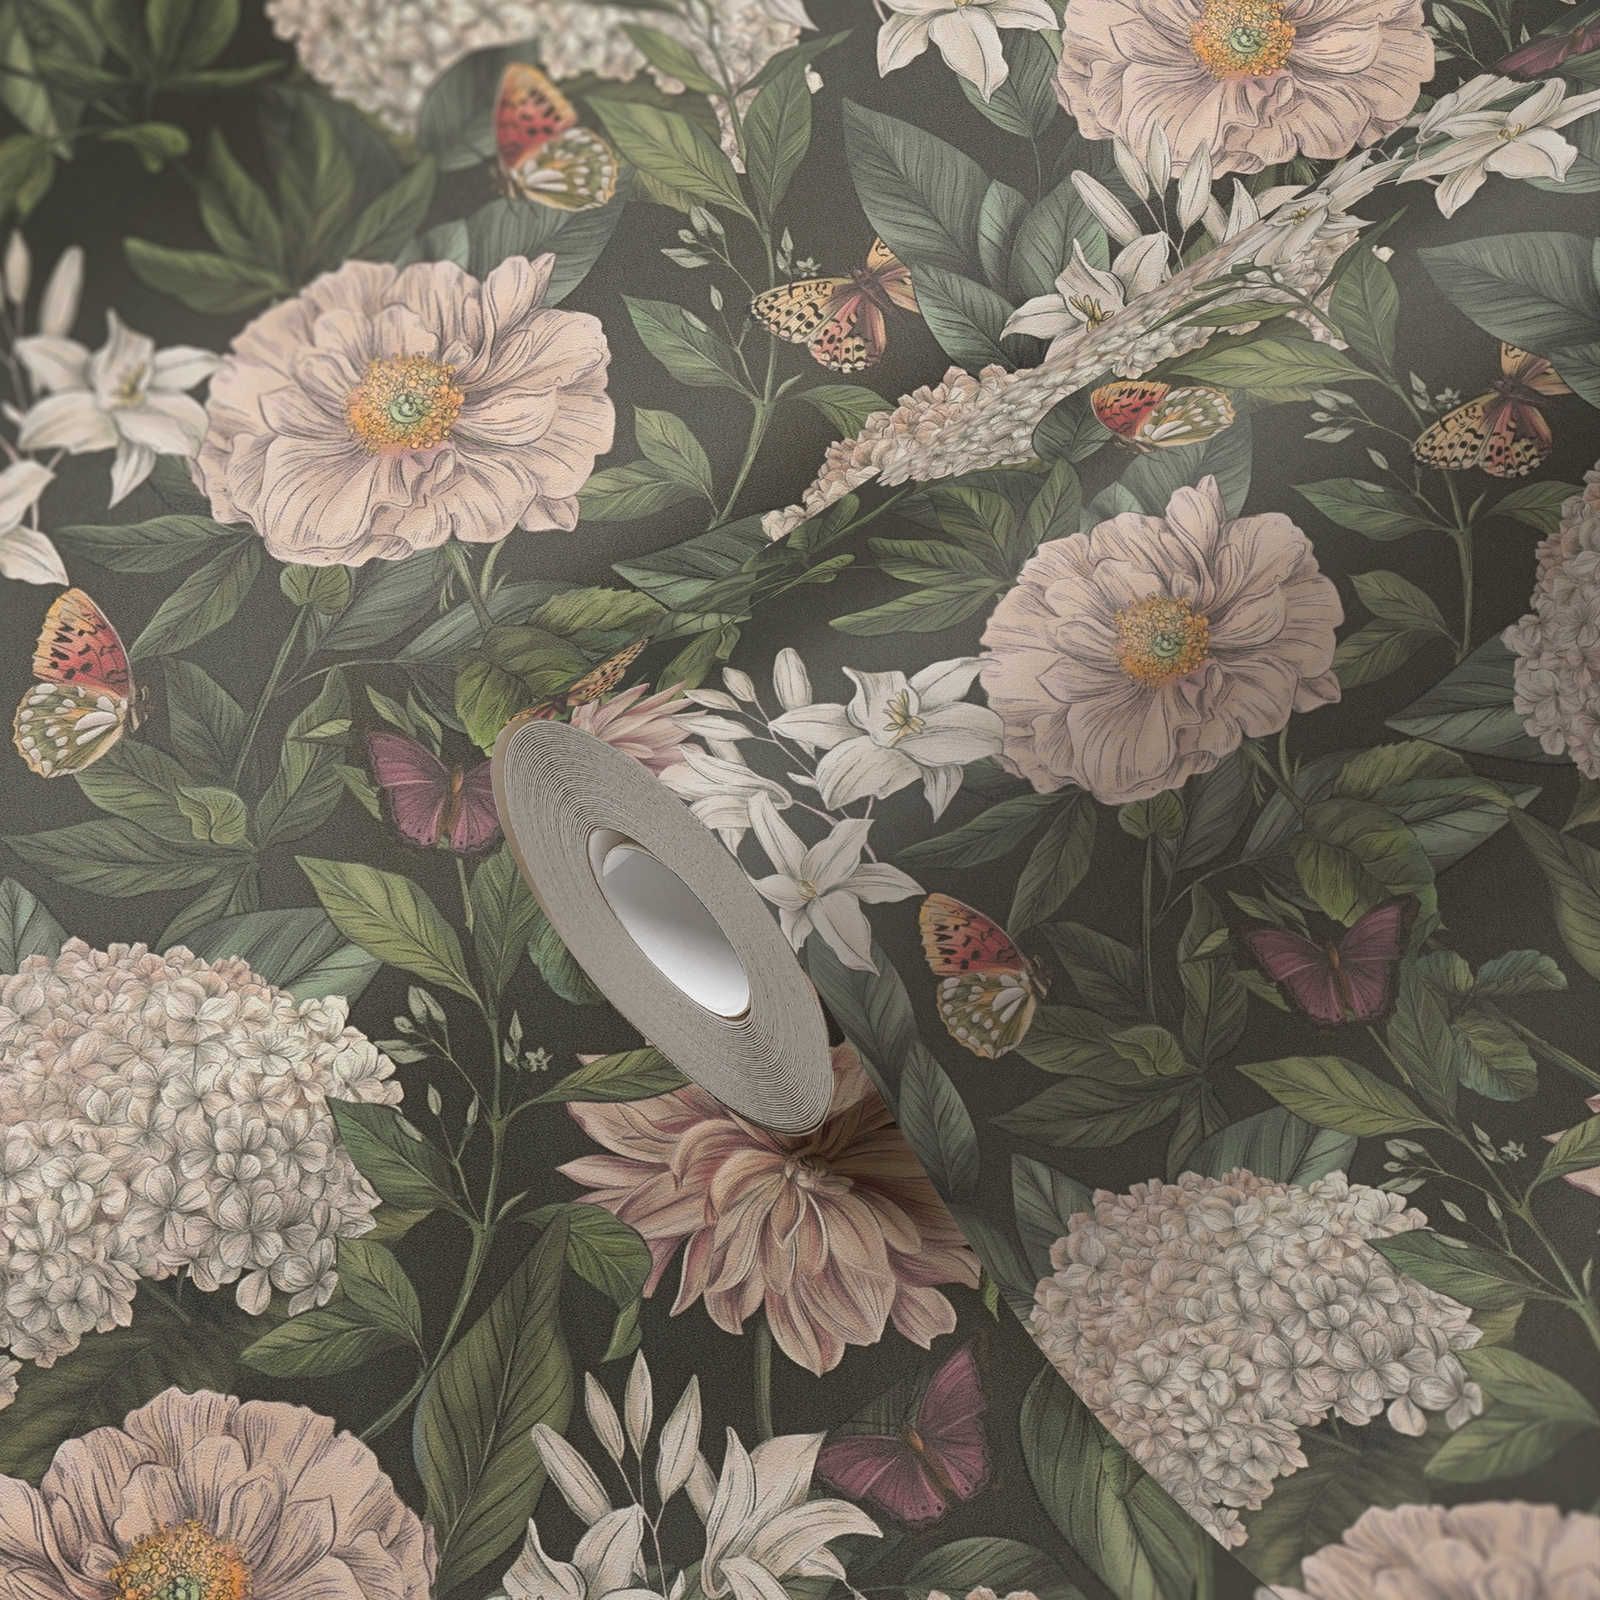             Moderne Tapete im floralen Stil mit Blumen & Schmetterlingen strukturiert – Schwarz, Dunkelgrün, Weiß
        